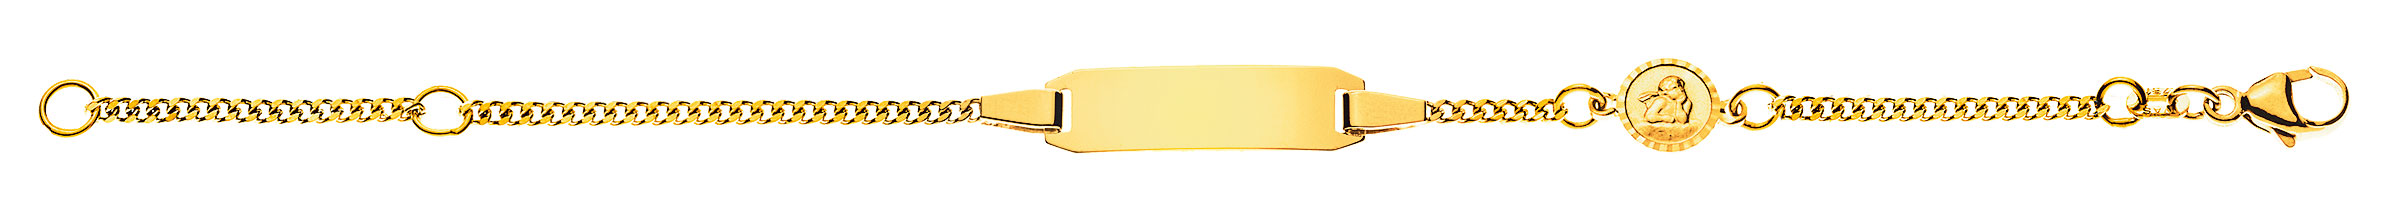 AURONOS Prestige ID-Bracelet en or jaune 18k chaîne blindée diamantée 16cm